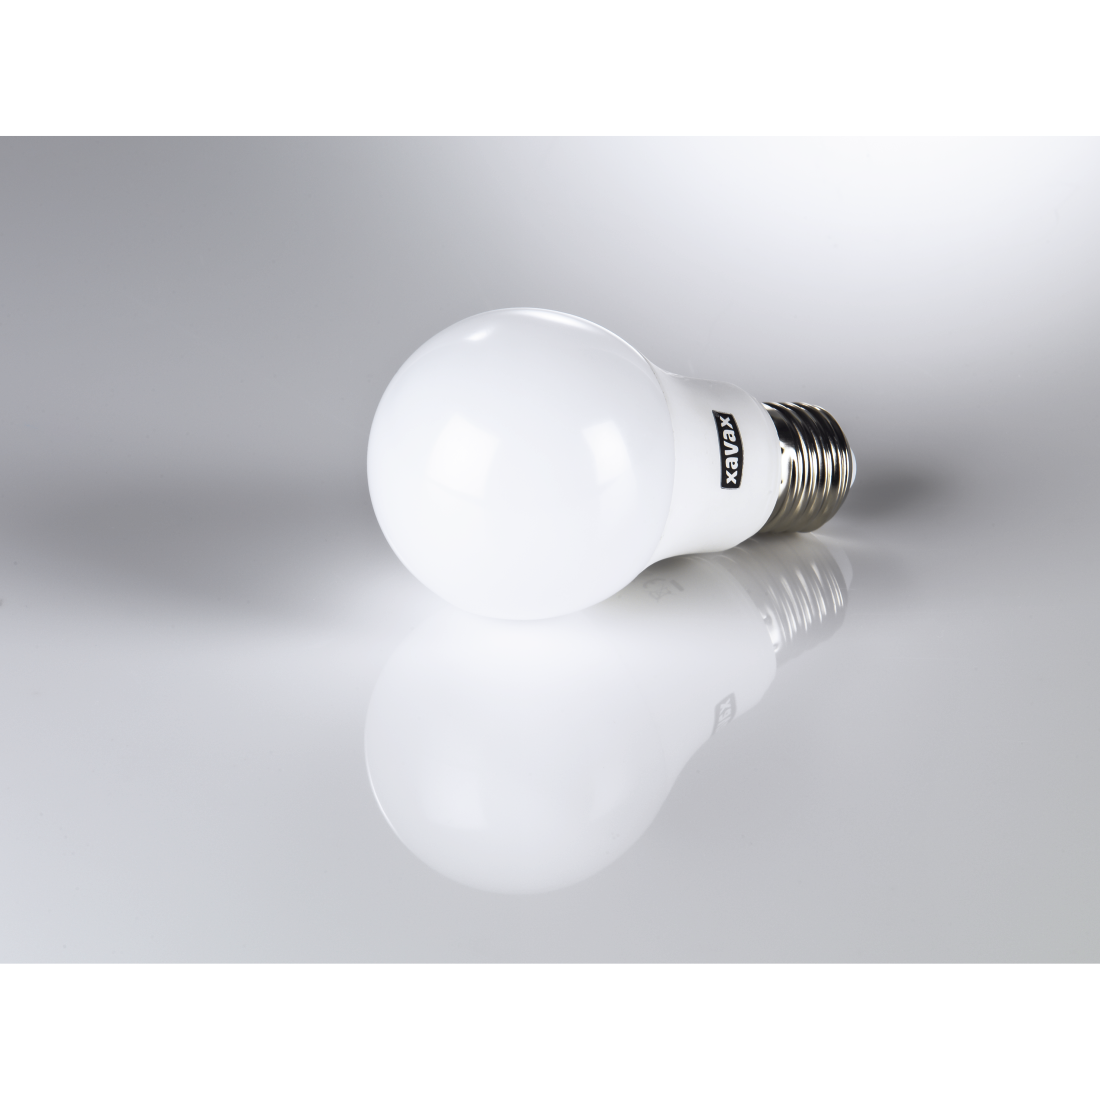 abx3 High-Res Image 3 - Xavax, Ampoule LED, E27, 806 lm rempl. 60W, lampe à incandes., blanc chaud